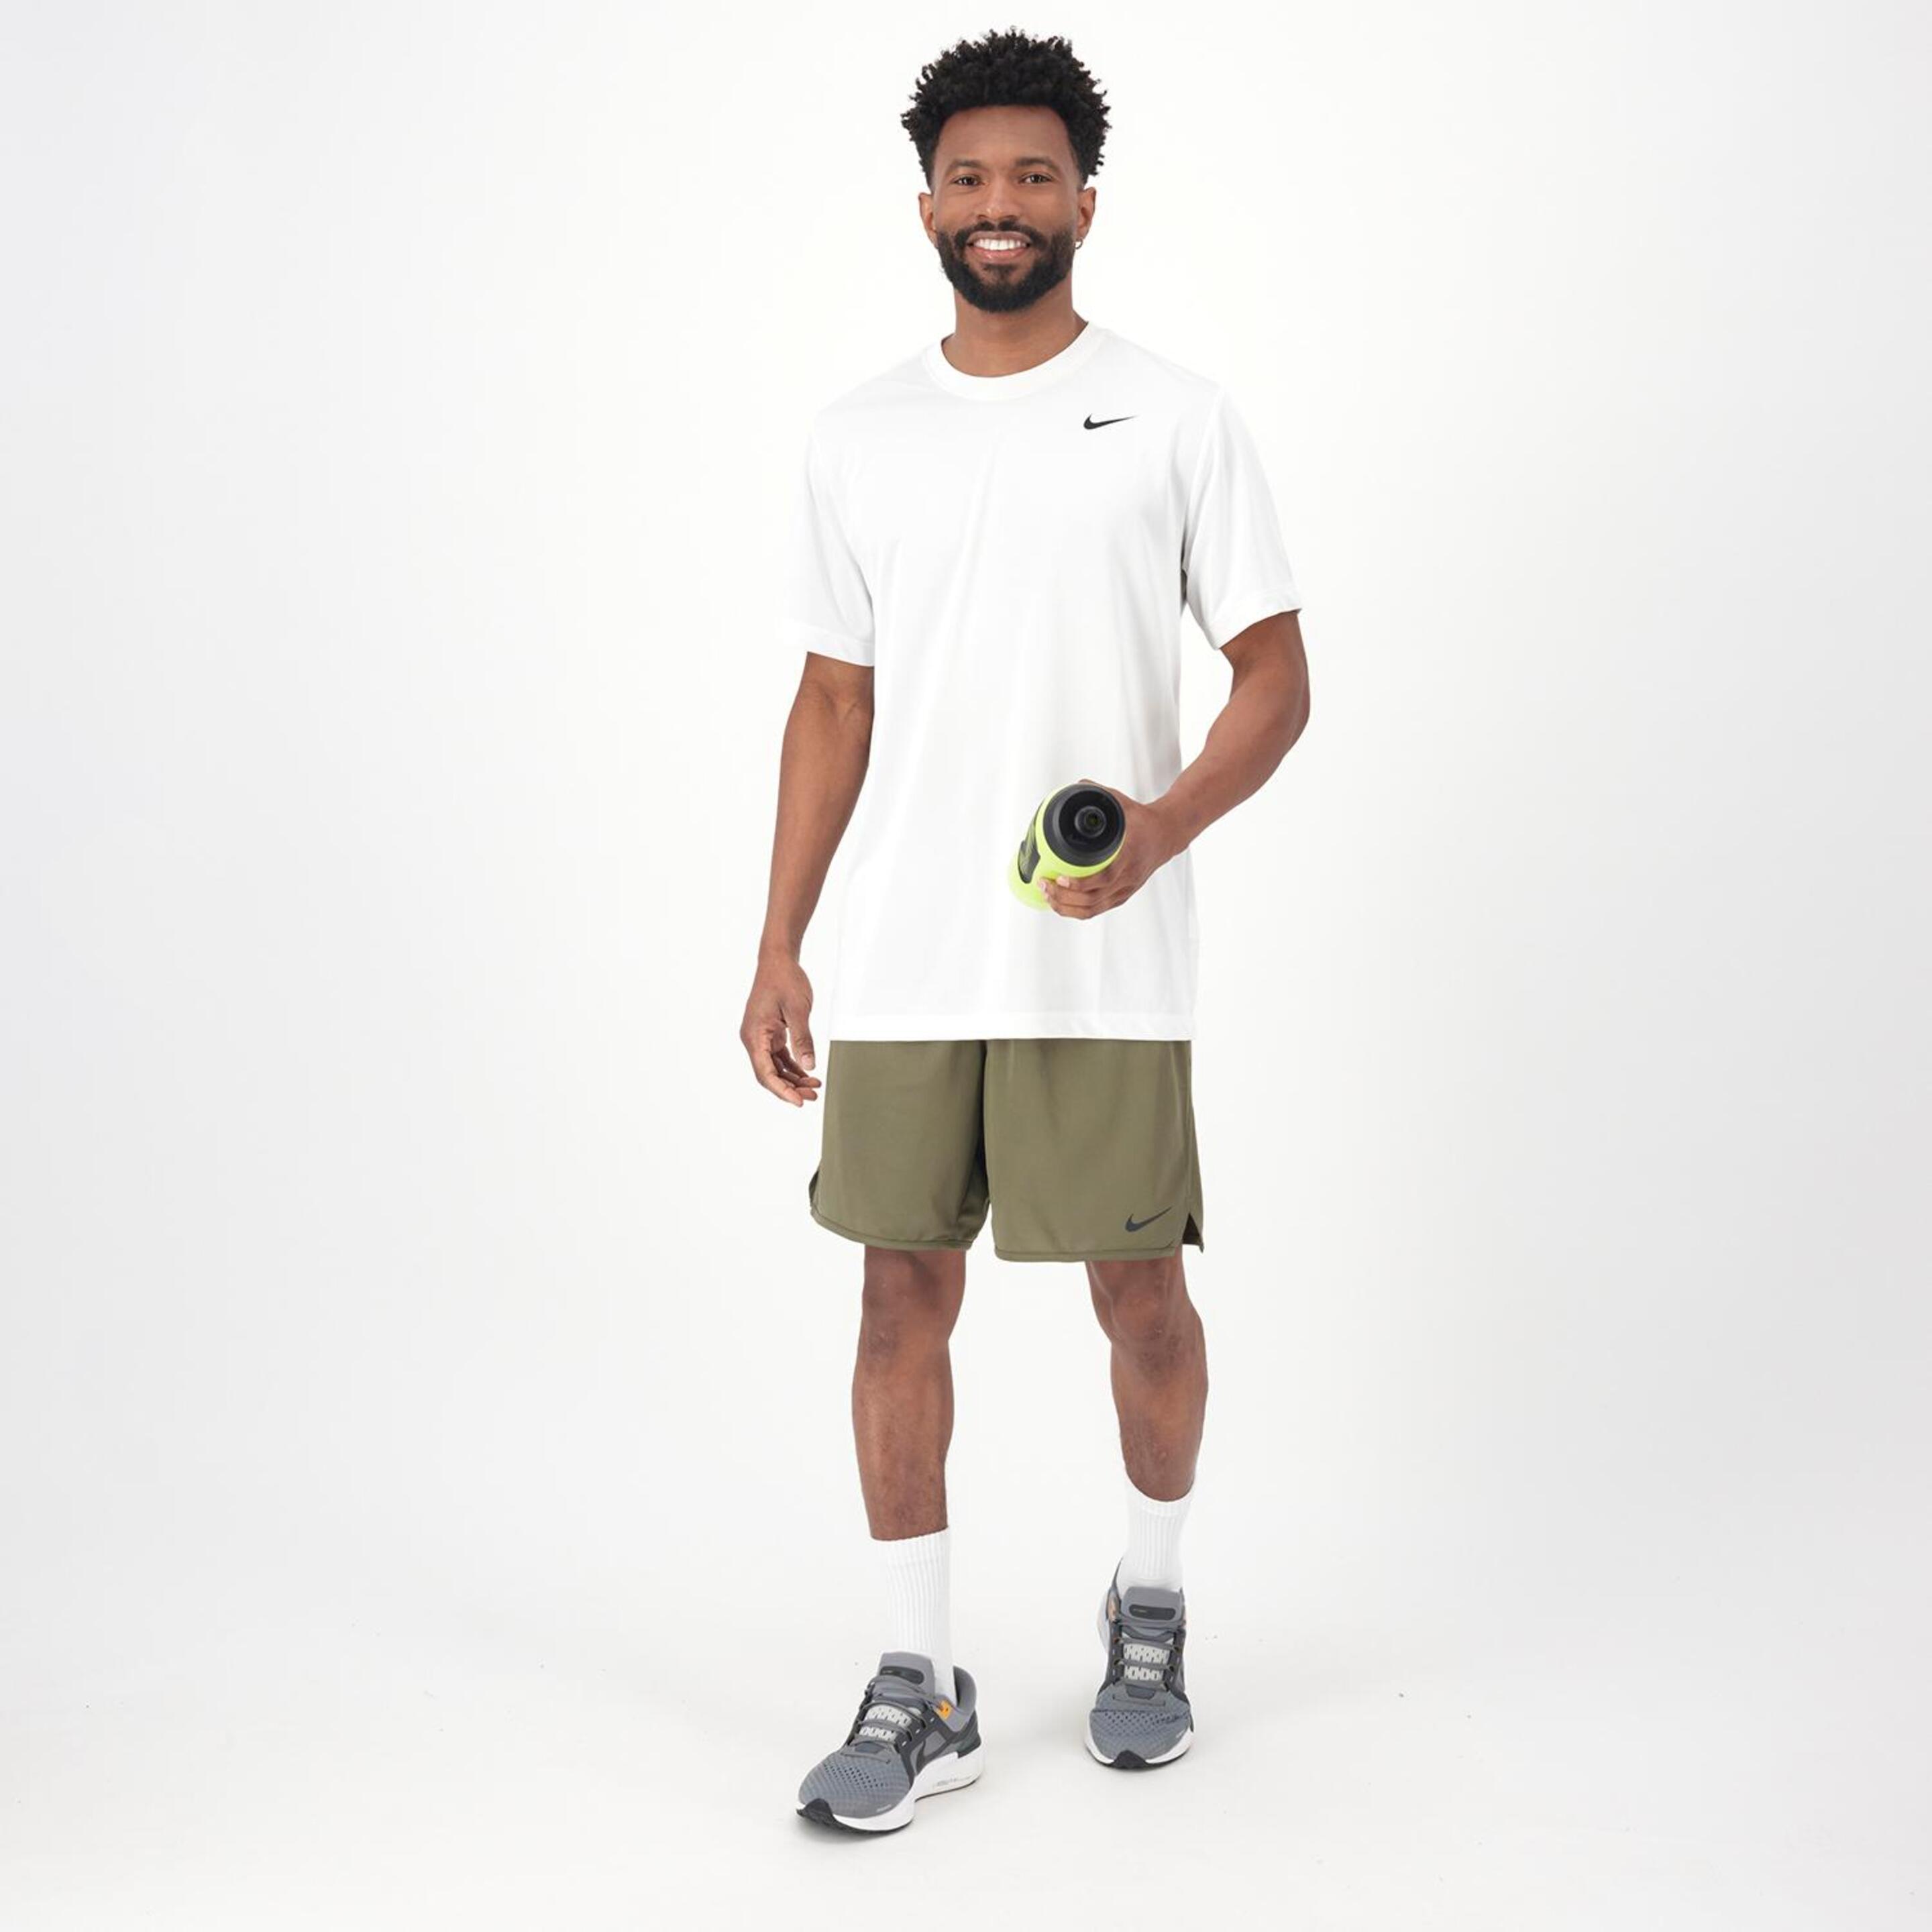 Nike Totality Knit - Kaki - Pantalón Corto Running Hombre